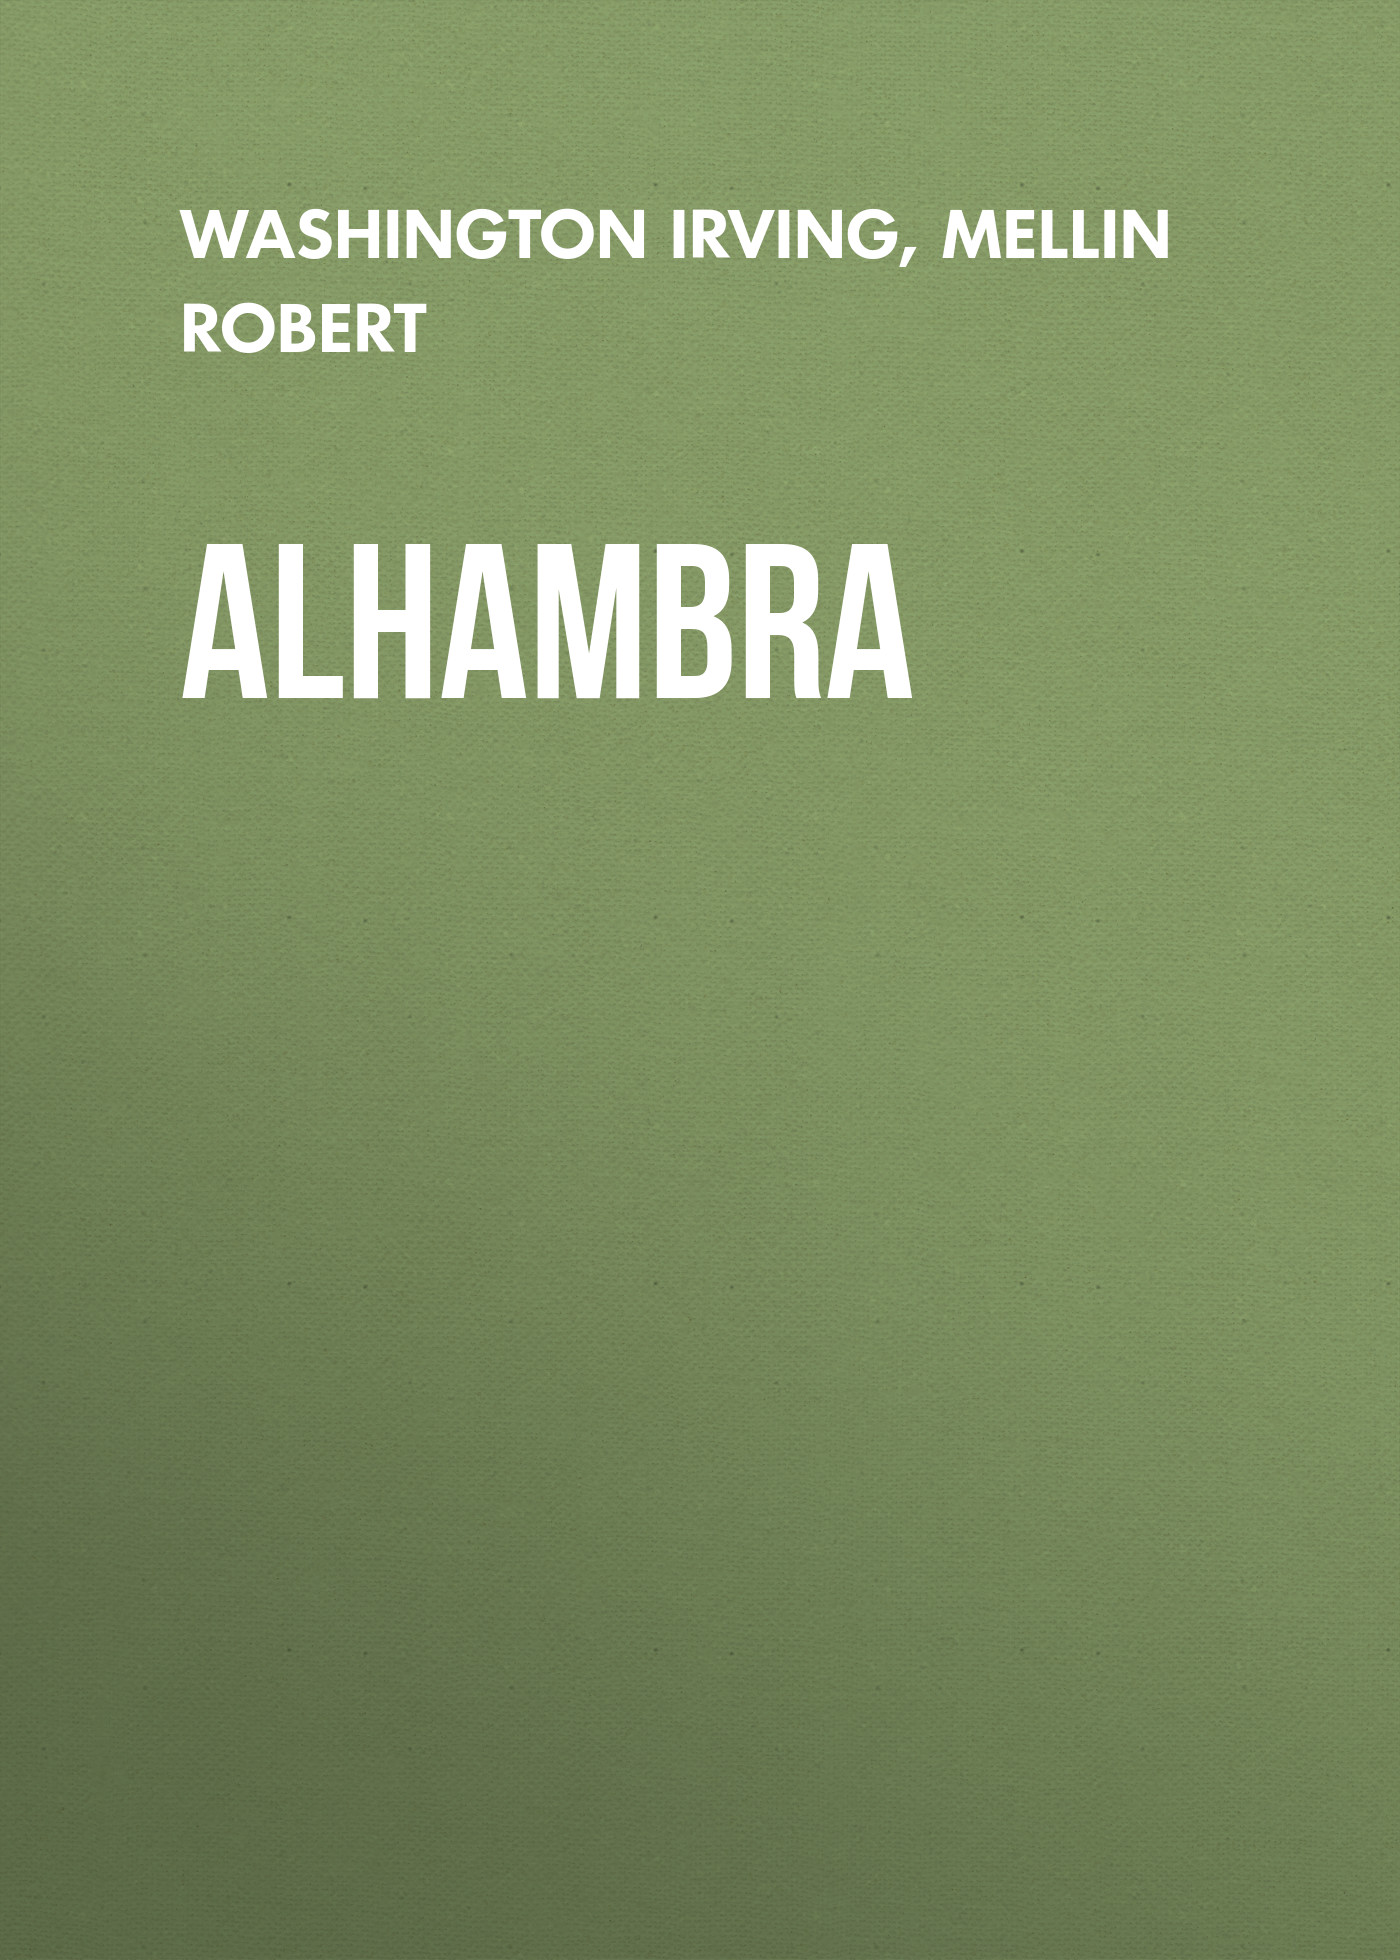 Книга Alhambra из серии , созданная Robert Mellin, Washington Irving, может относится к жанру Литература 19 века, Зарубежная старинная литература, Зарубежная классика. Стоимость электронной книги Alhambra с идентификатором 25229948 составляет 0 руб.